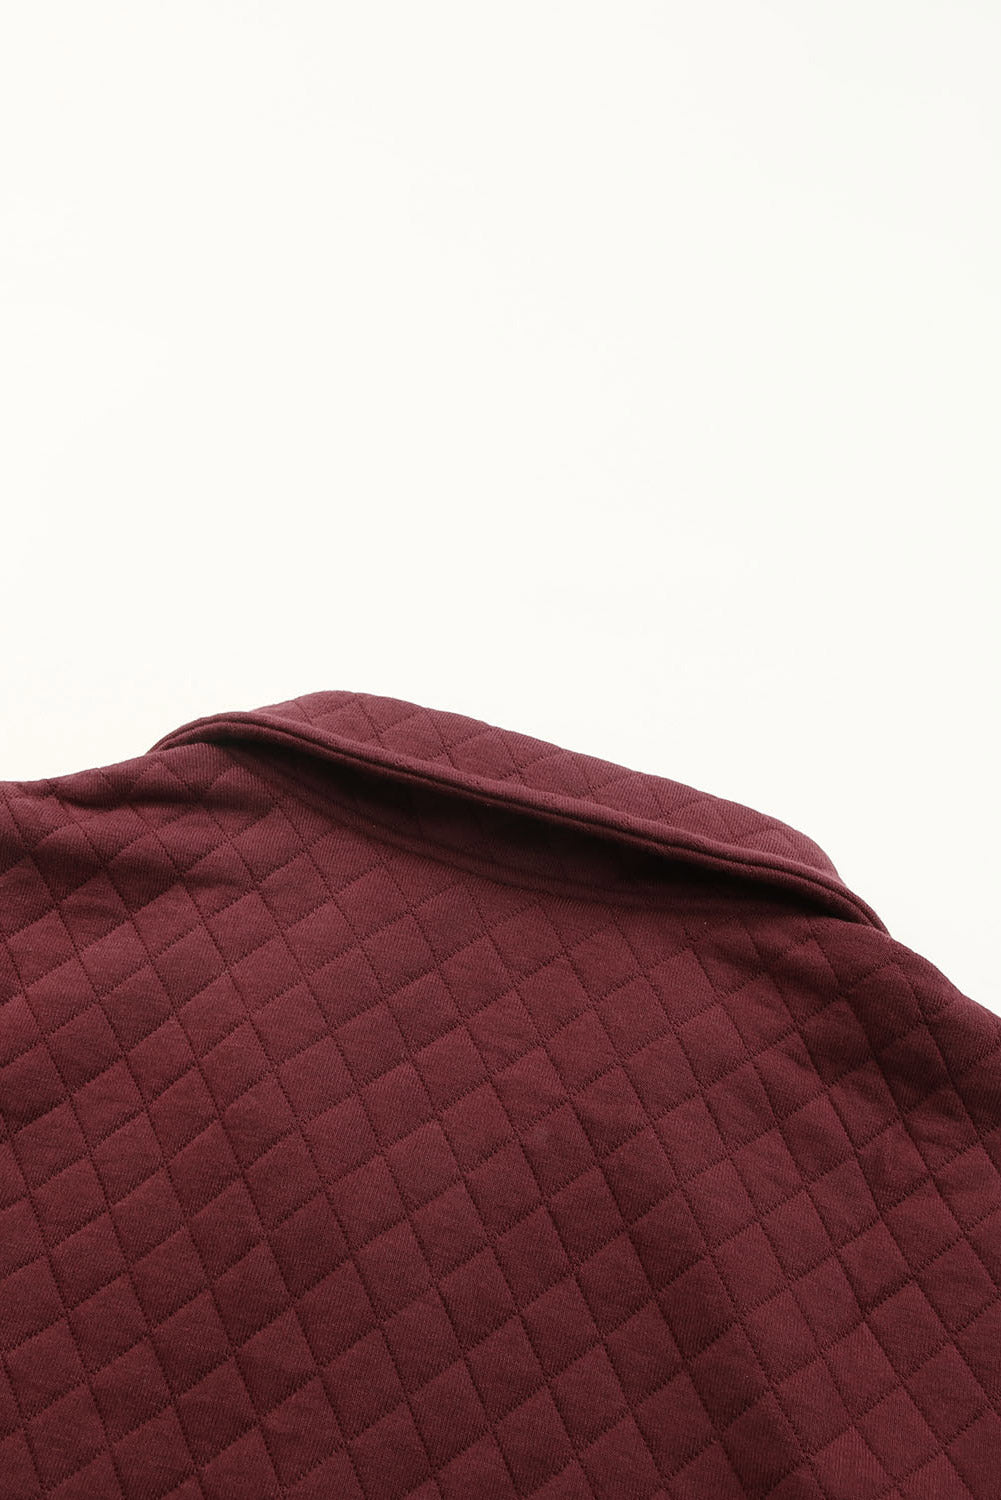 Vatrenocrvena majica s kariranim ukrasima geometrijske teksture